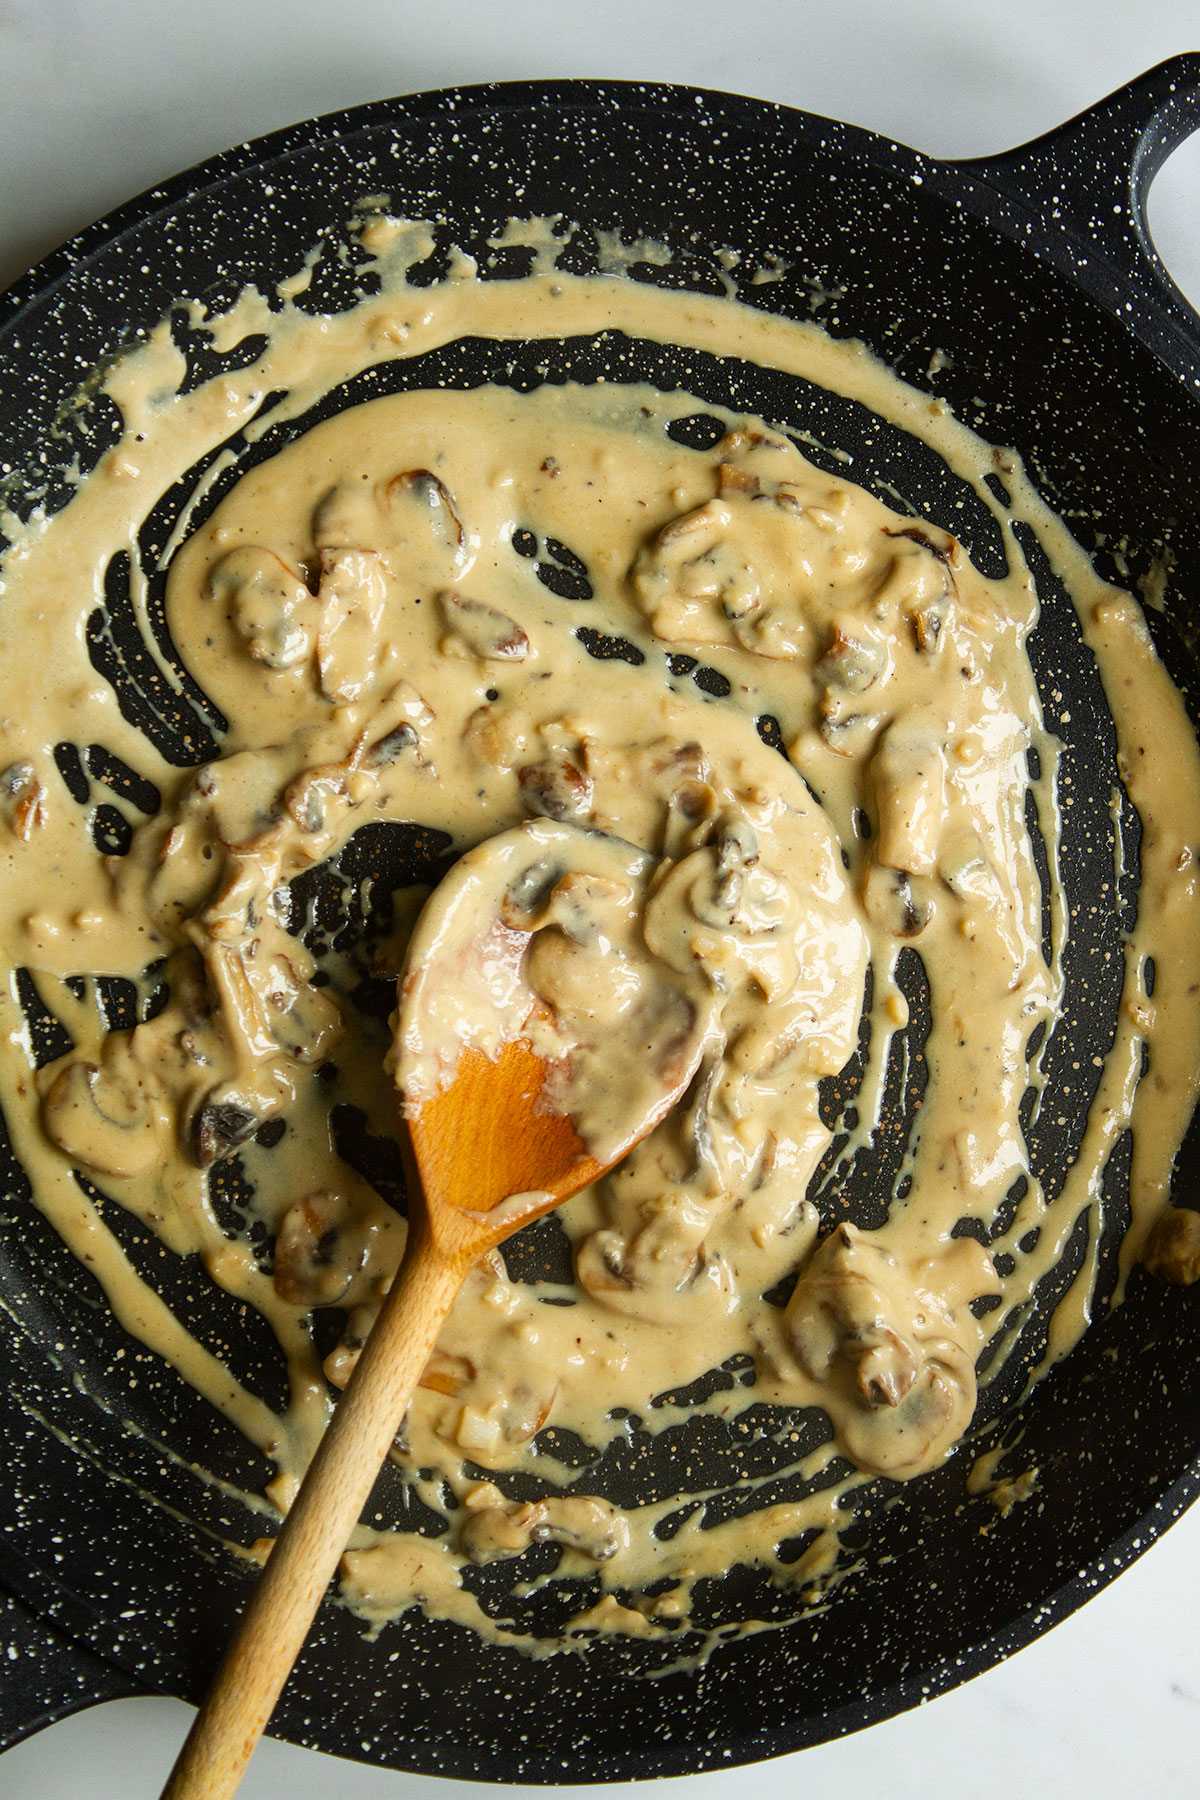 Creamy mushroom miso pasta sauce in a skillet.